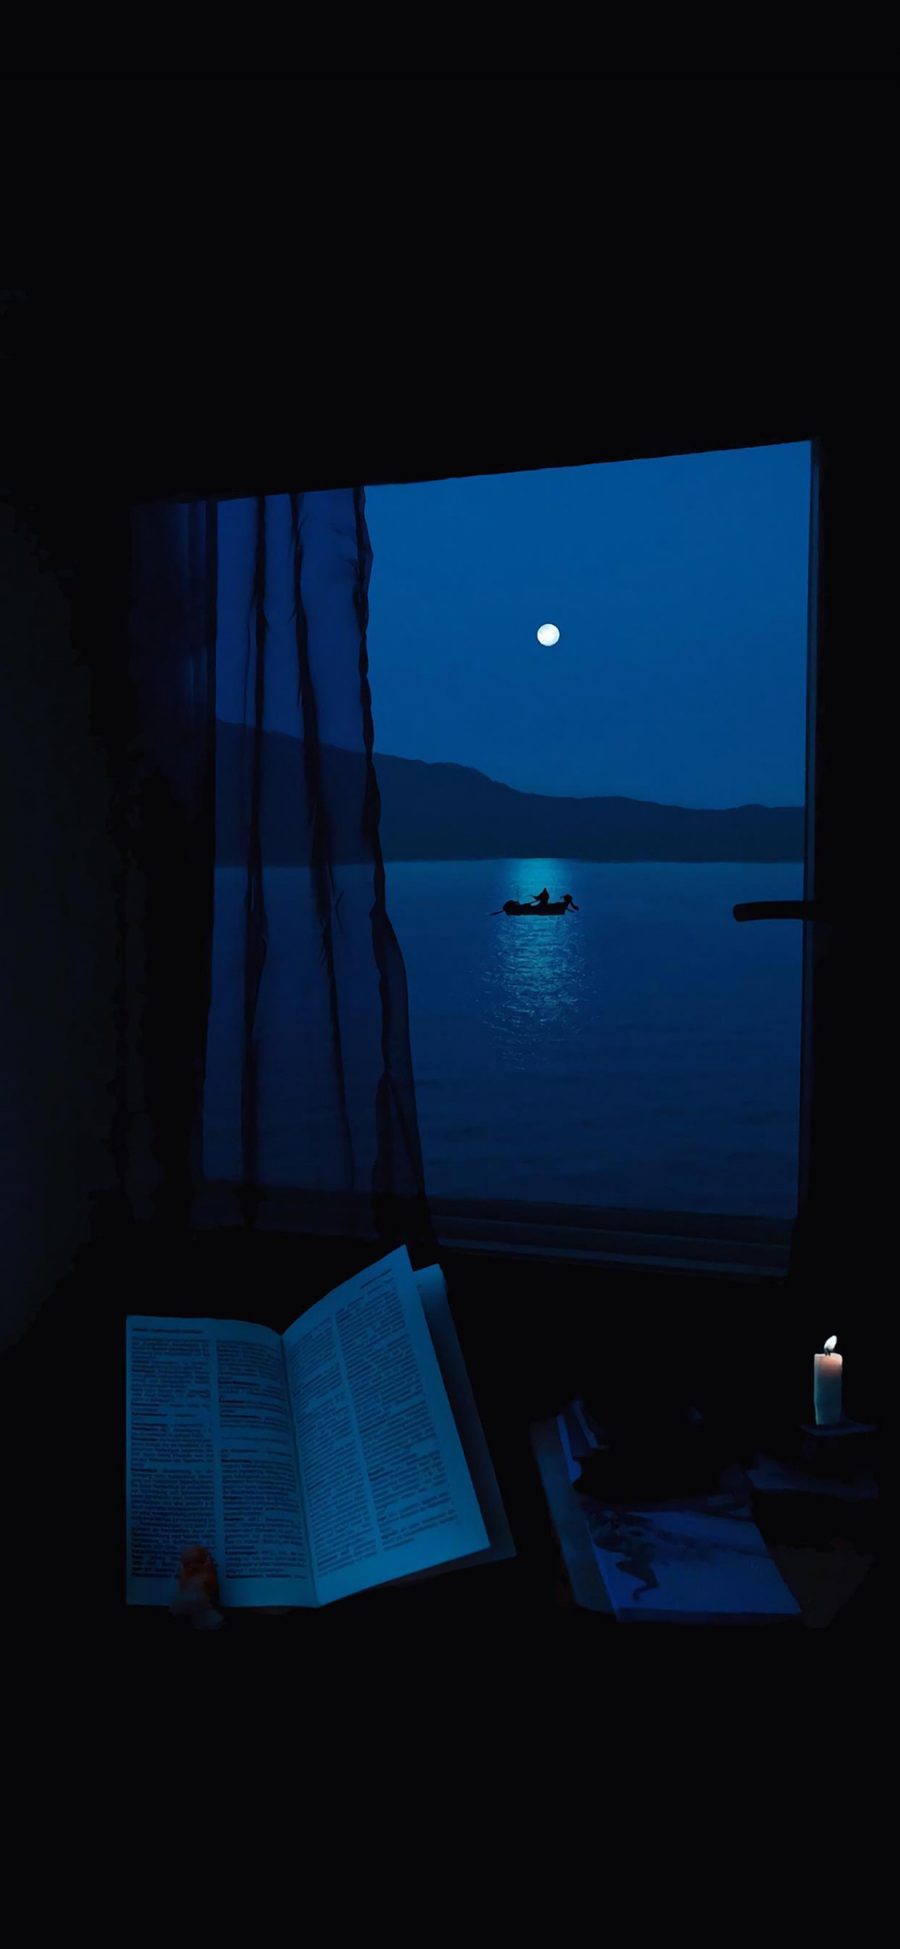 [2436×1125]窗户 夜景 湖泊 静谧 苹果手机壁纸图片